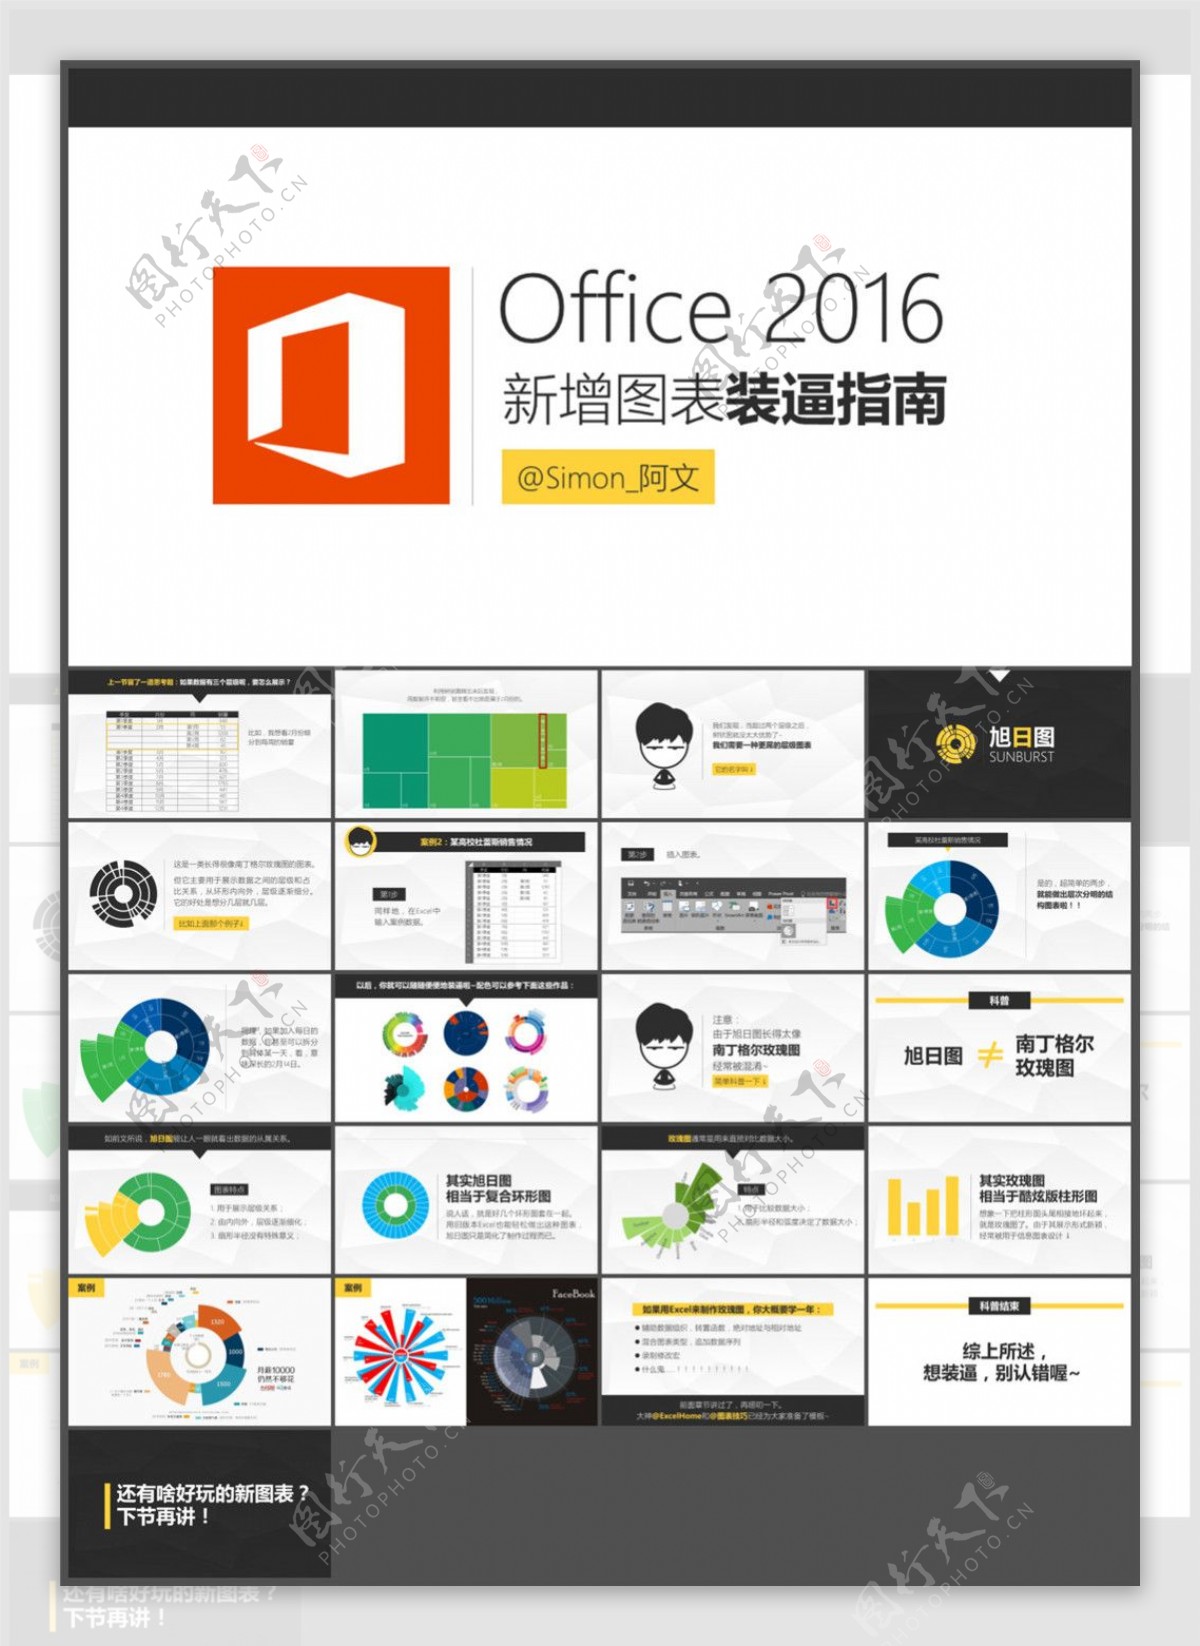 Office2016新增图表装逼指南酷炫旭日图PPT模板